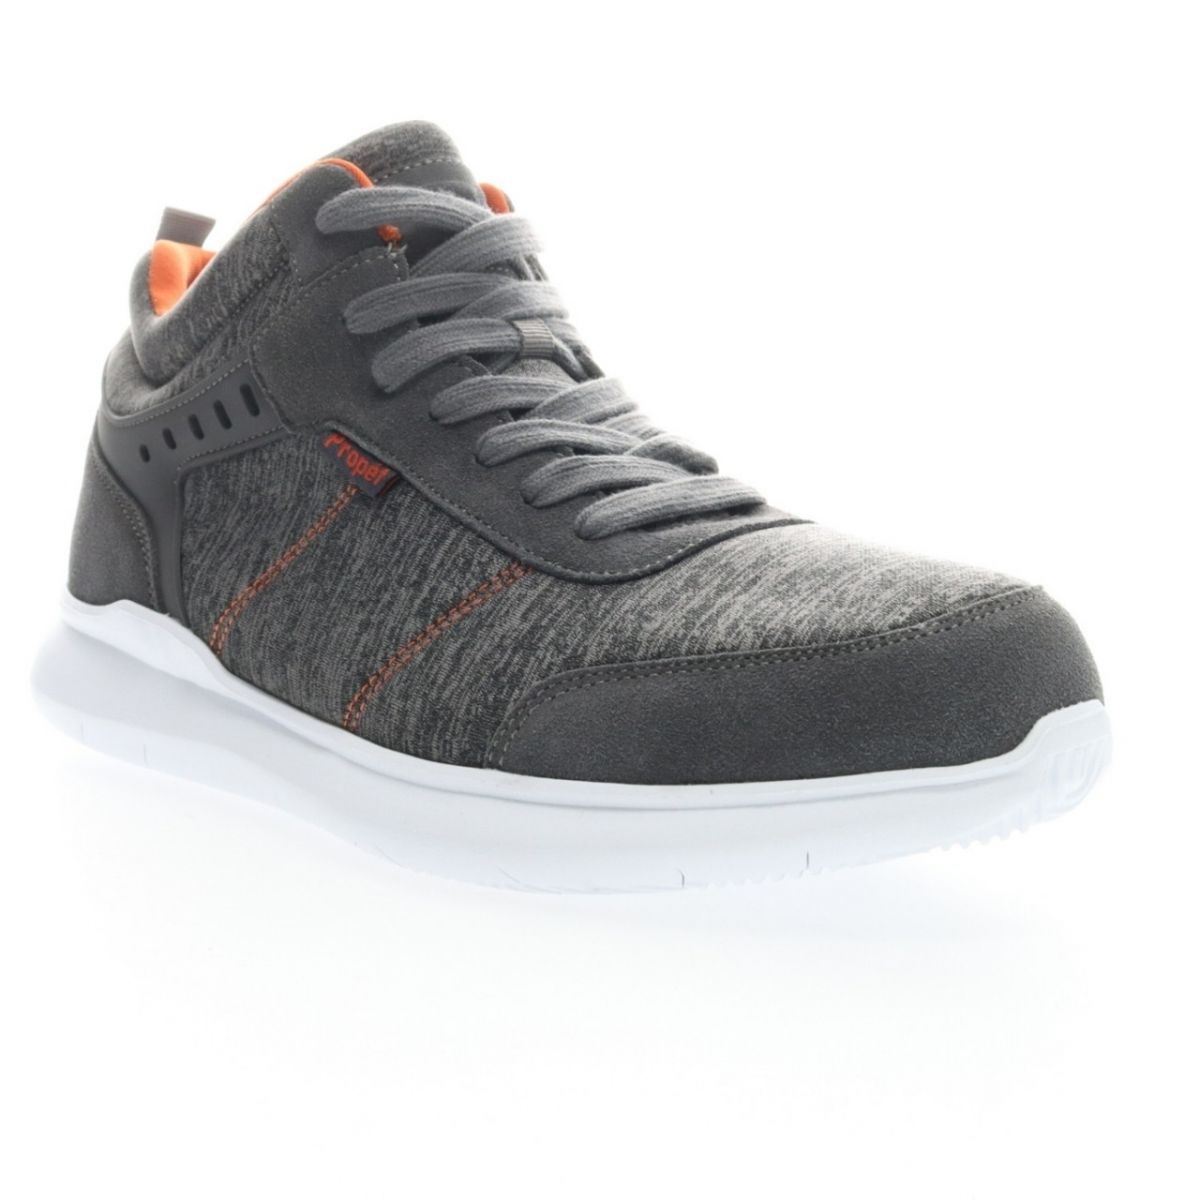 Propet Men's Viator Hi Sneaker Grey/Orange - MAA112MGOR Grey/orange - Grey/orange, 9